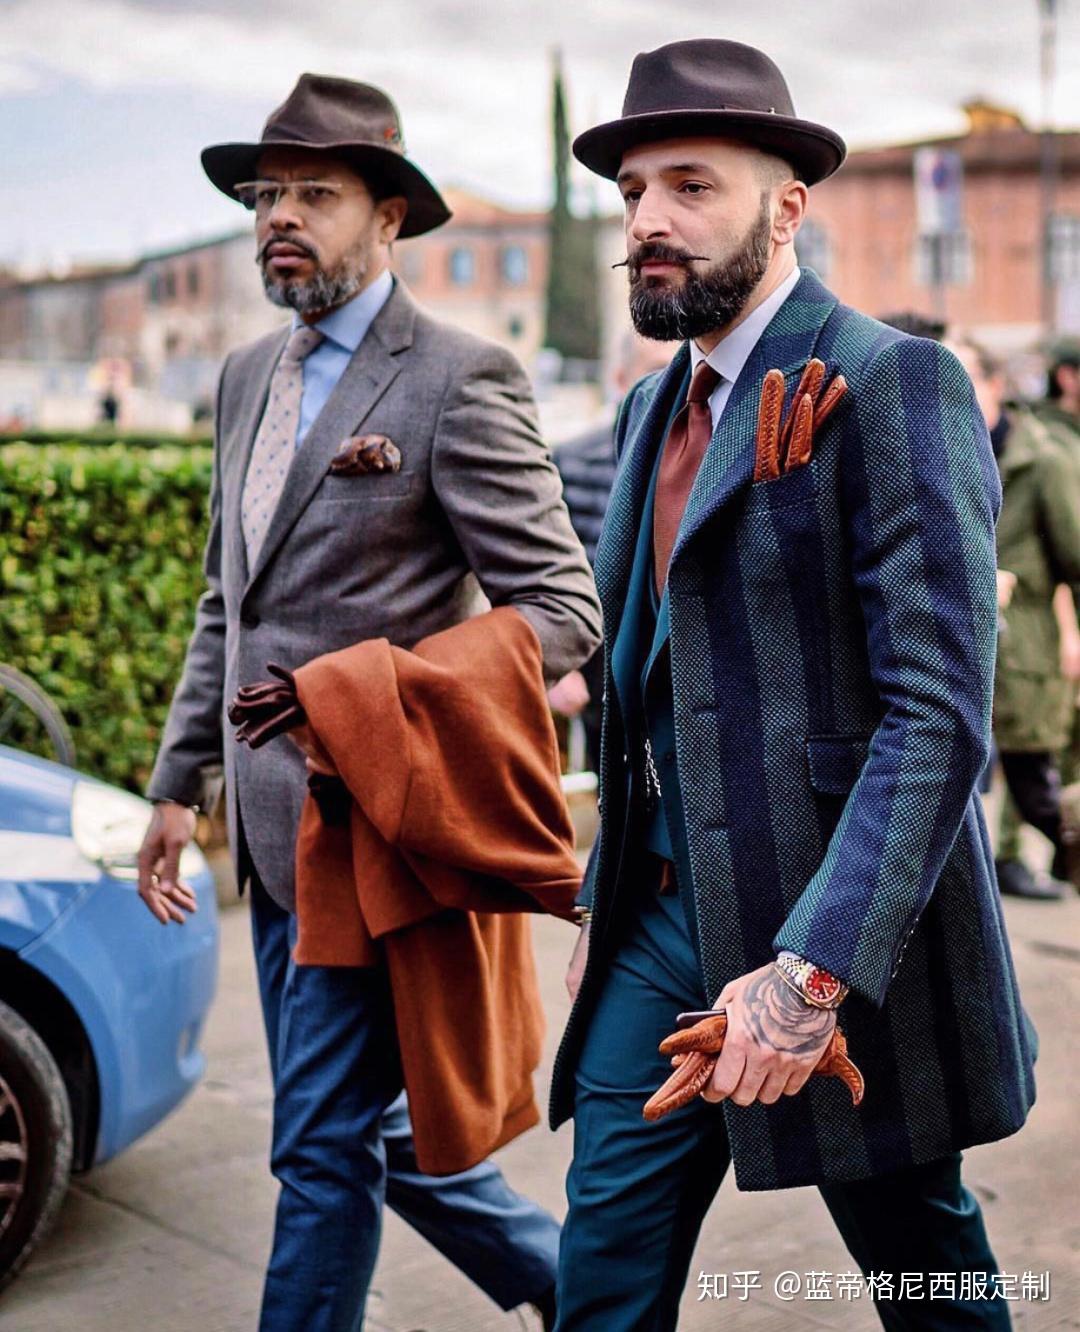 随着男士时装潮流的不断革新,旧时用来显示社会阶级的帽子逐渐发展成